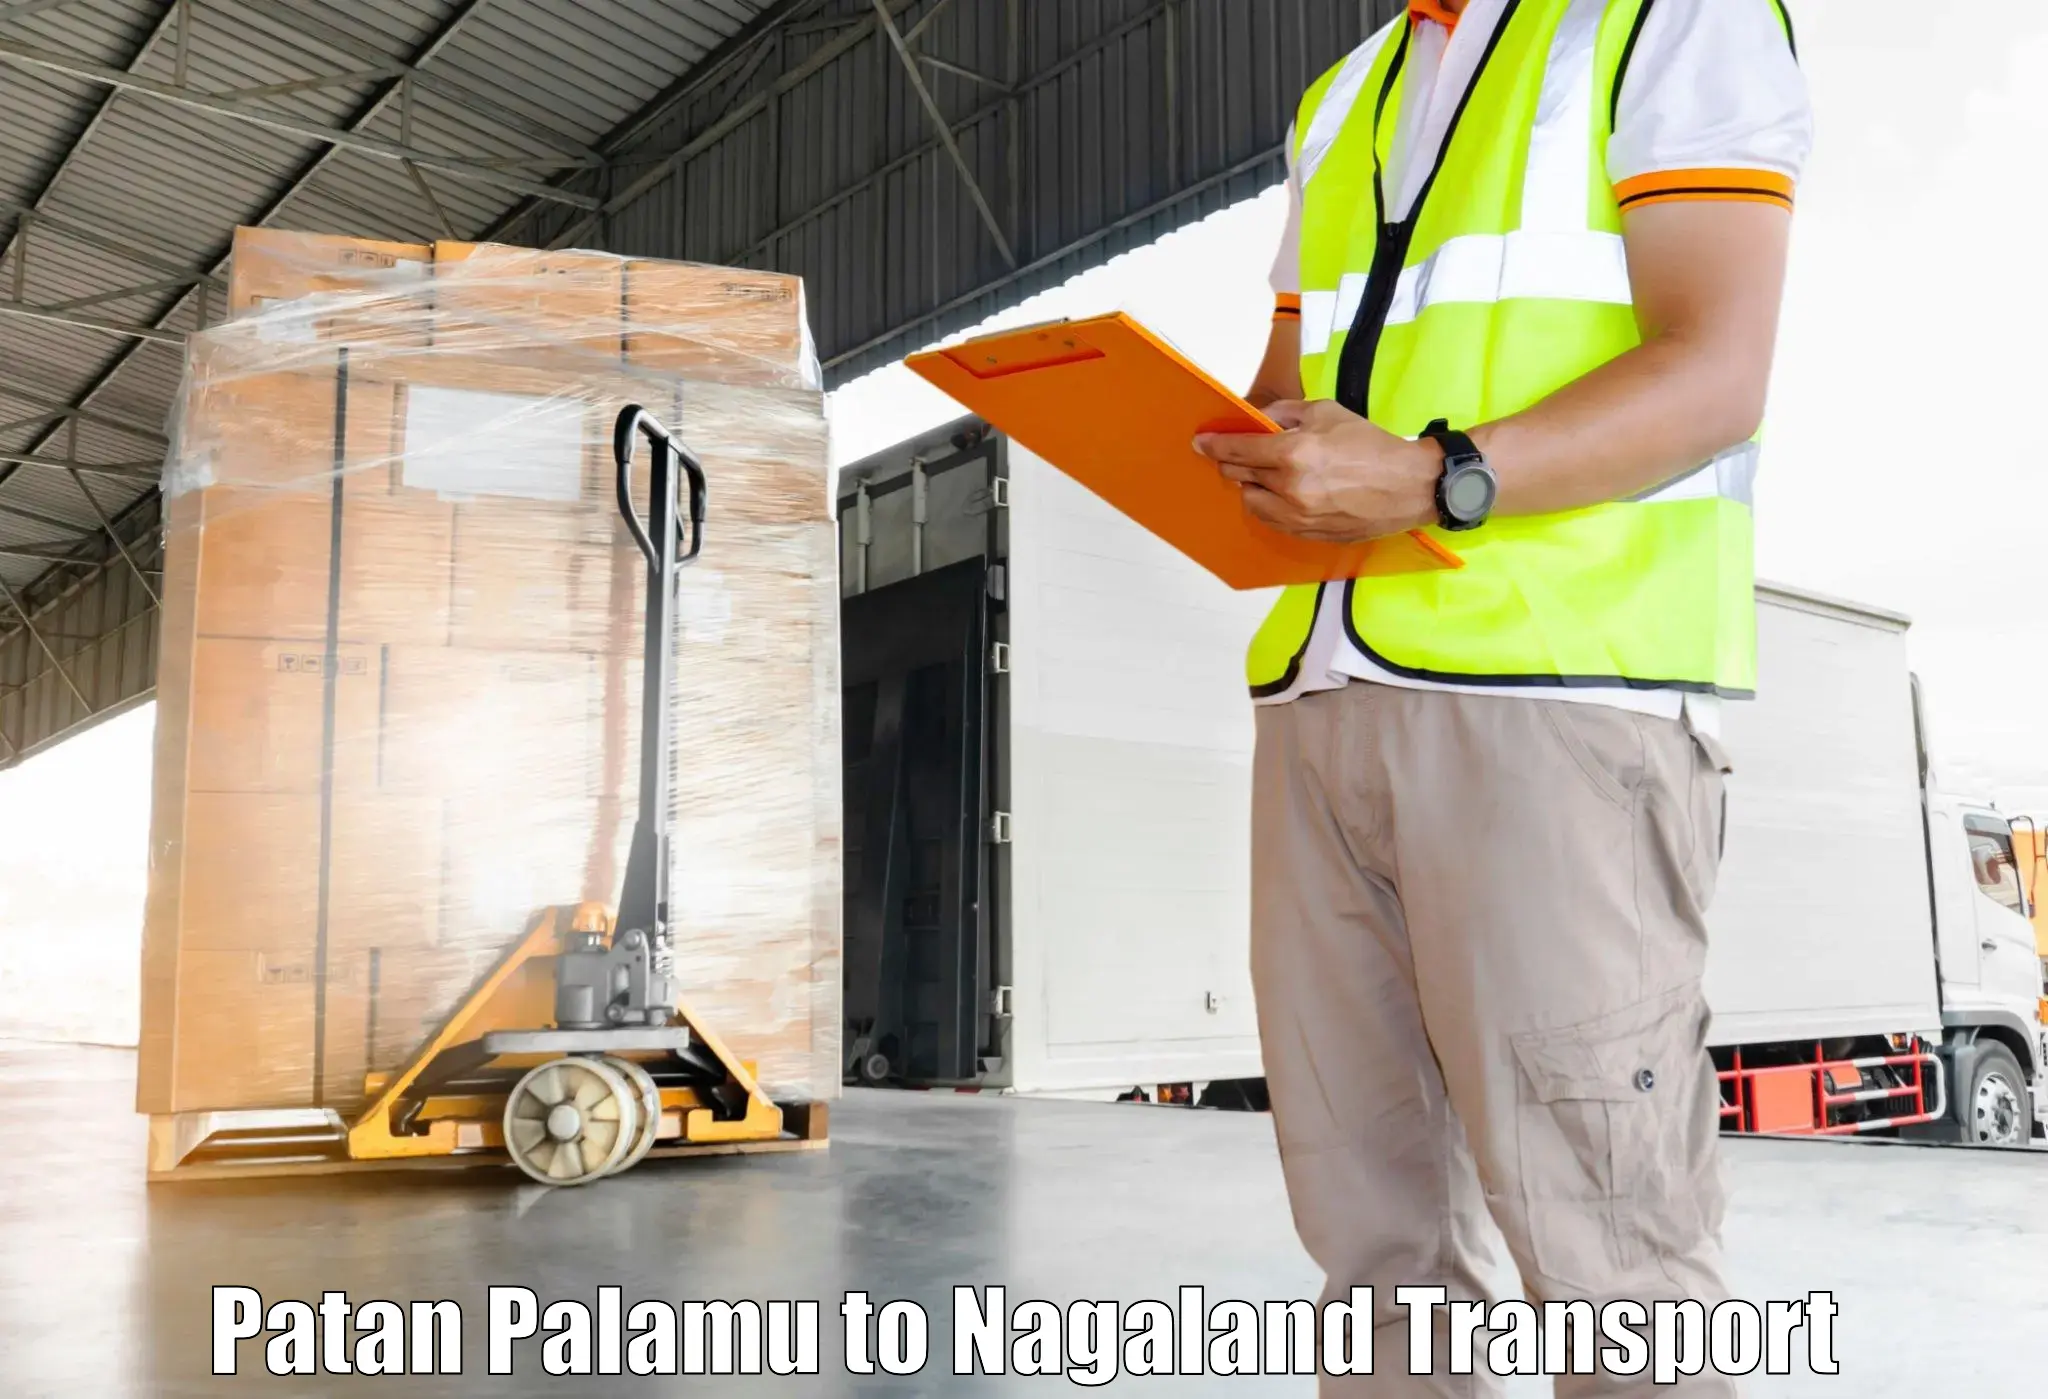 Furniture transport service in Patan Palamu to Dimapur